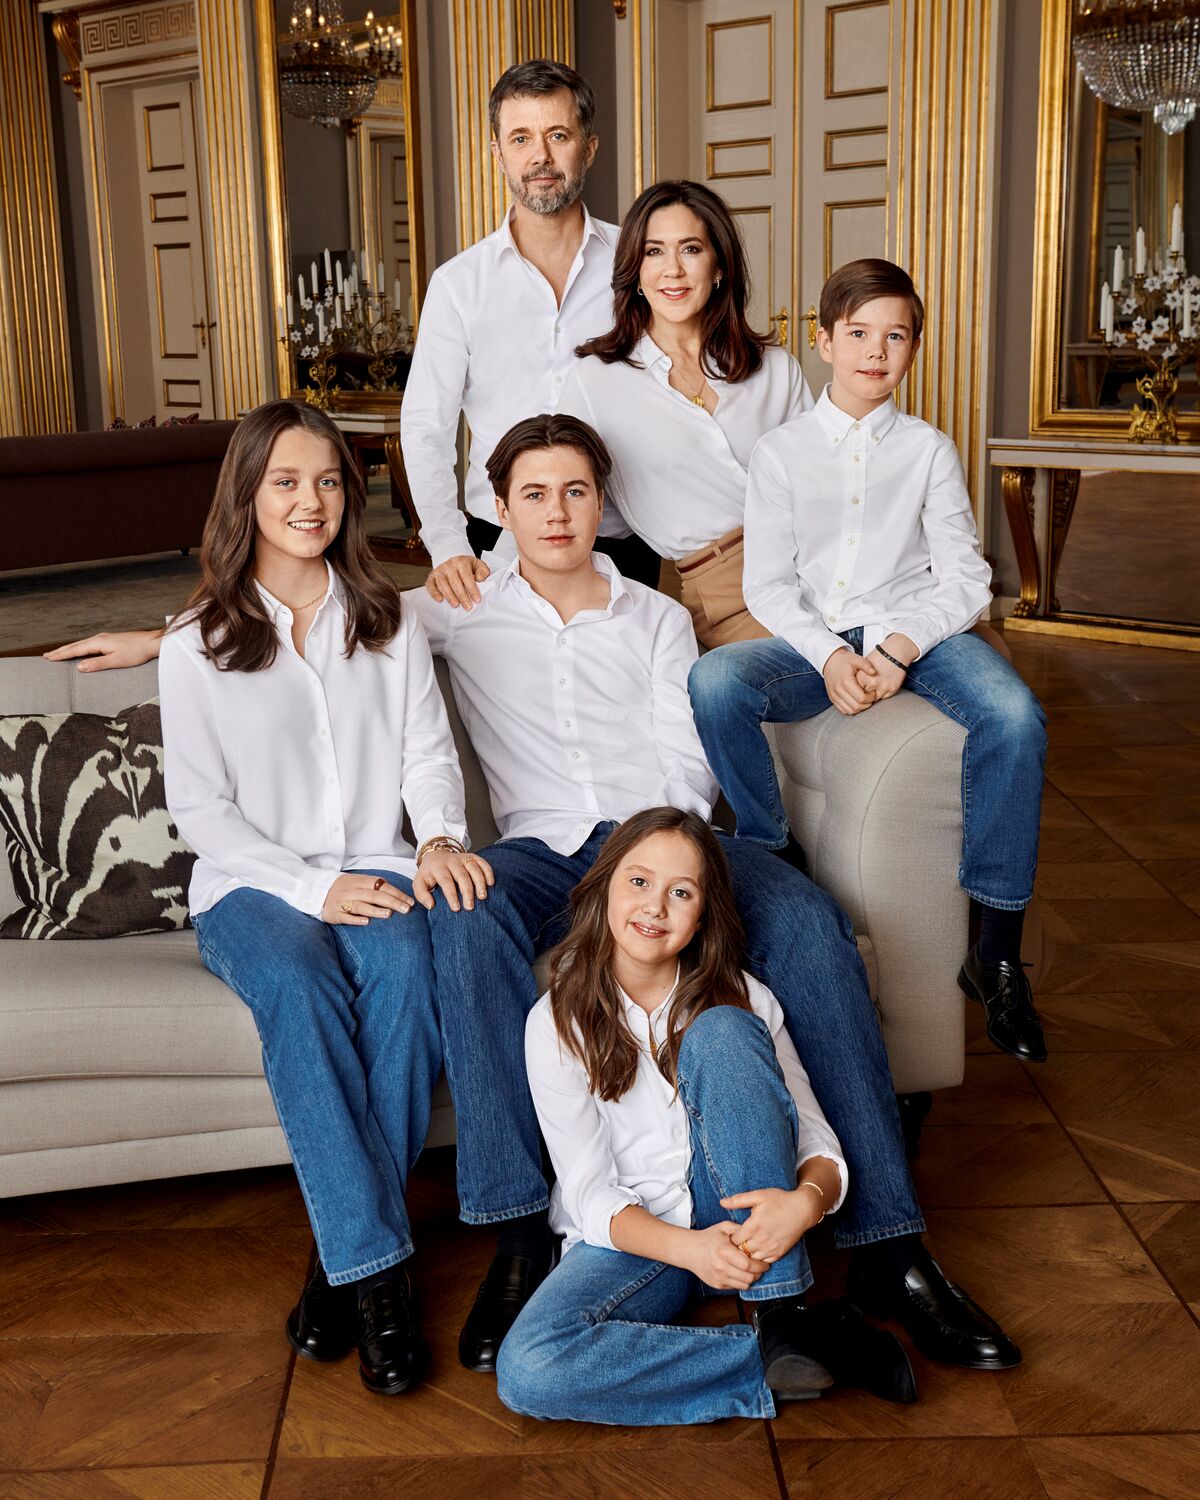 Кронпринц Фредерик с супругой Мэри и четырьмя детьми: Изабеллой, Кристианом, Винсентом и Йозефиной